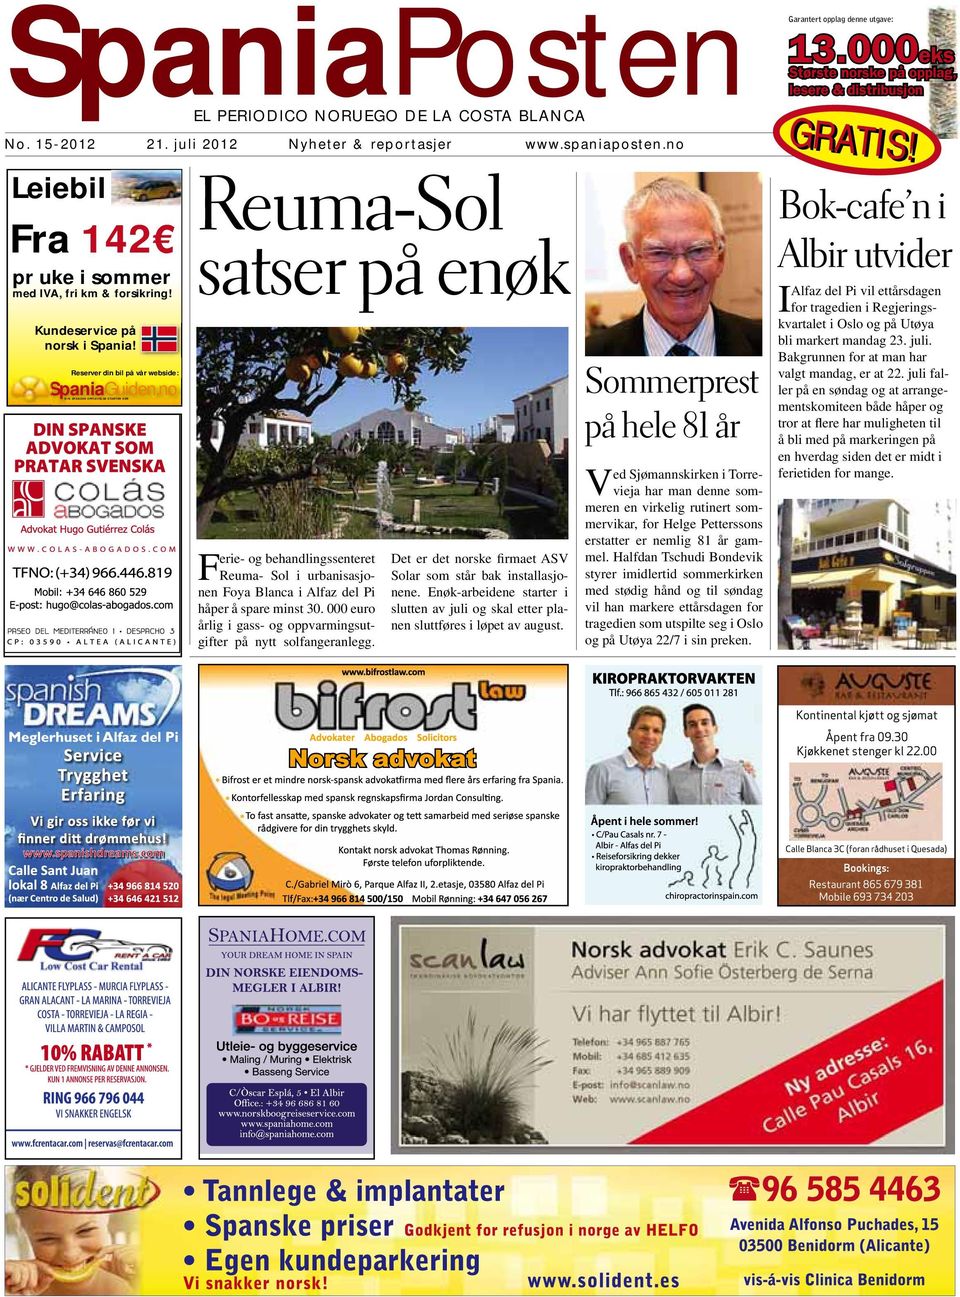 no DIN SPANSKE OPPLEVELSE STARTER HER Reuma-Sol satser på enøk Ferie- og behandlingssenteret Reuma- Sol i urbanisasjonen Foya Blanca i Alfaz del Pi håper å spare minst 30.